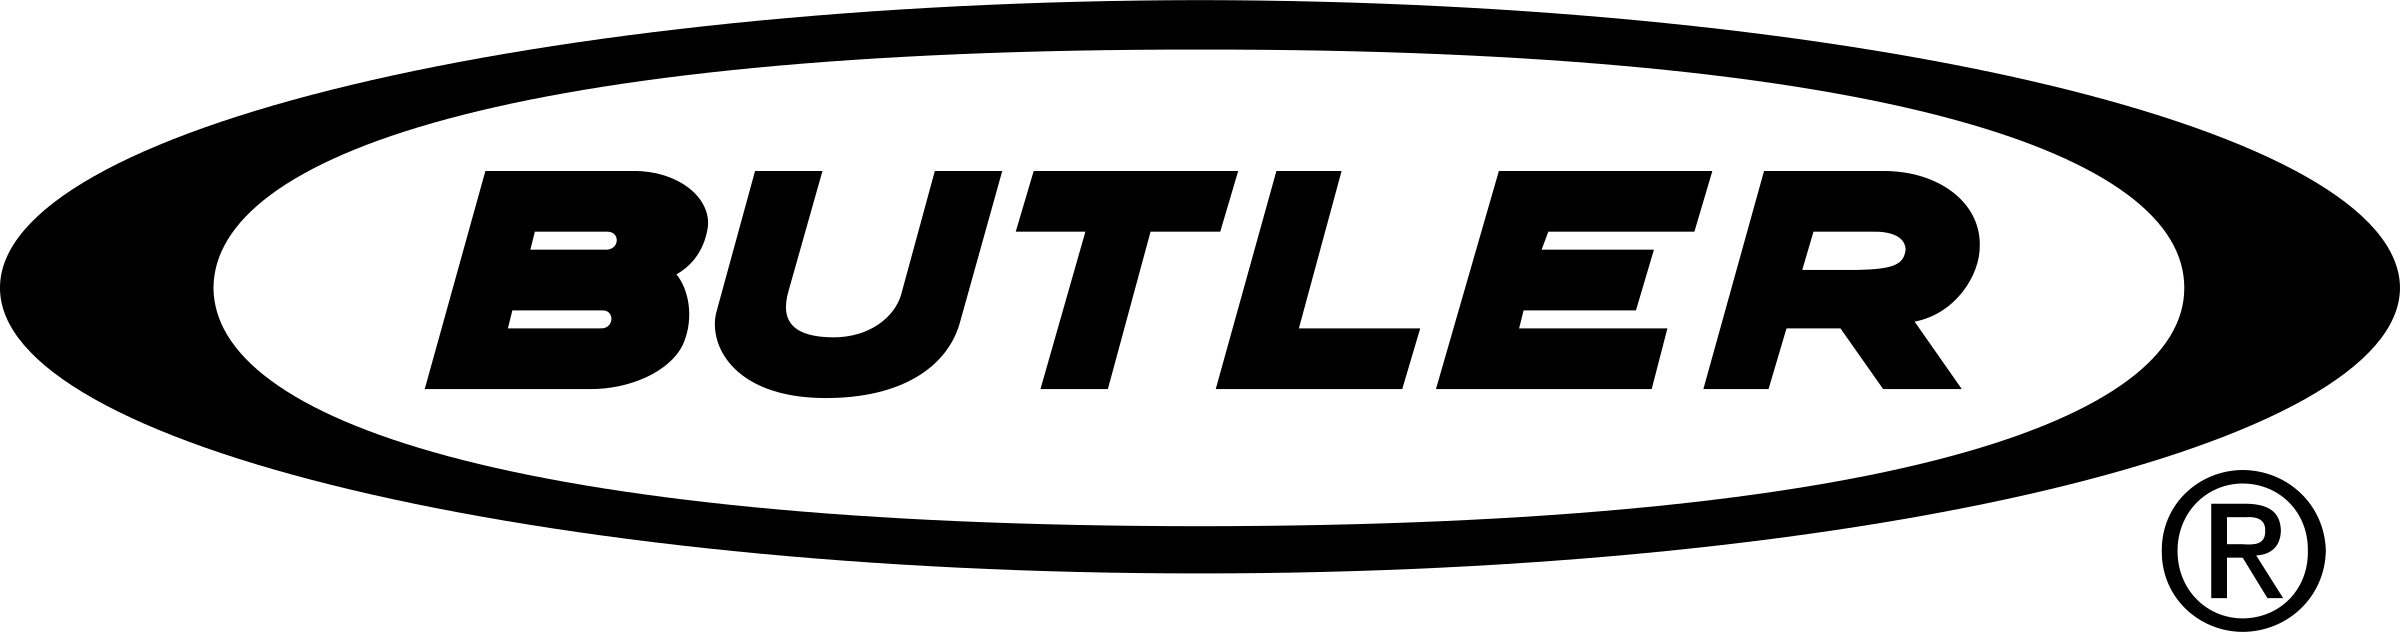 Butler Logo - Butler Logo PNG Transparent & SVG Vector - Freebie Supply